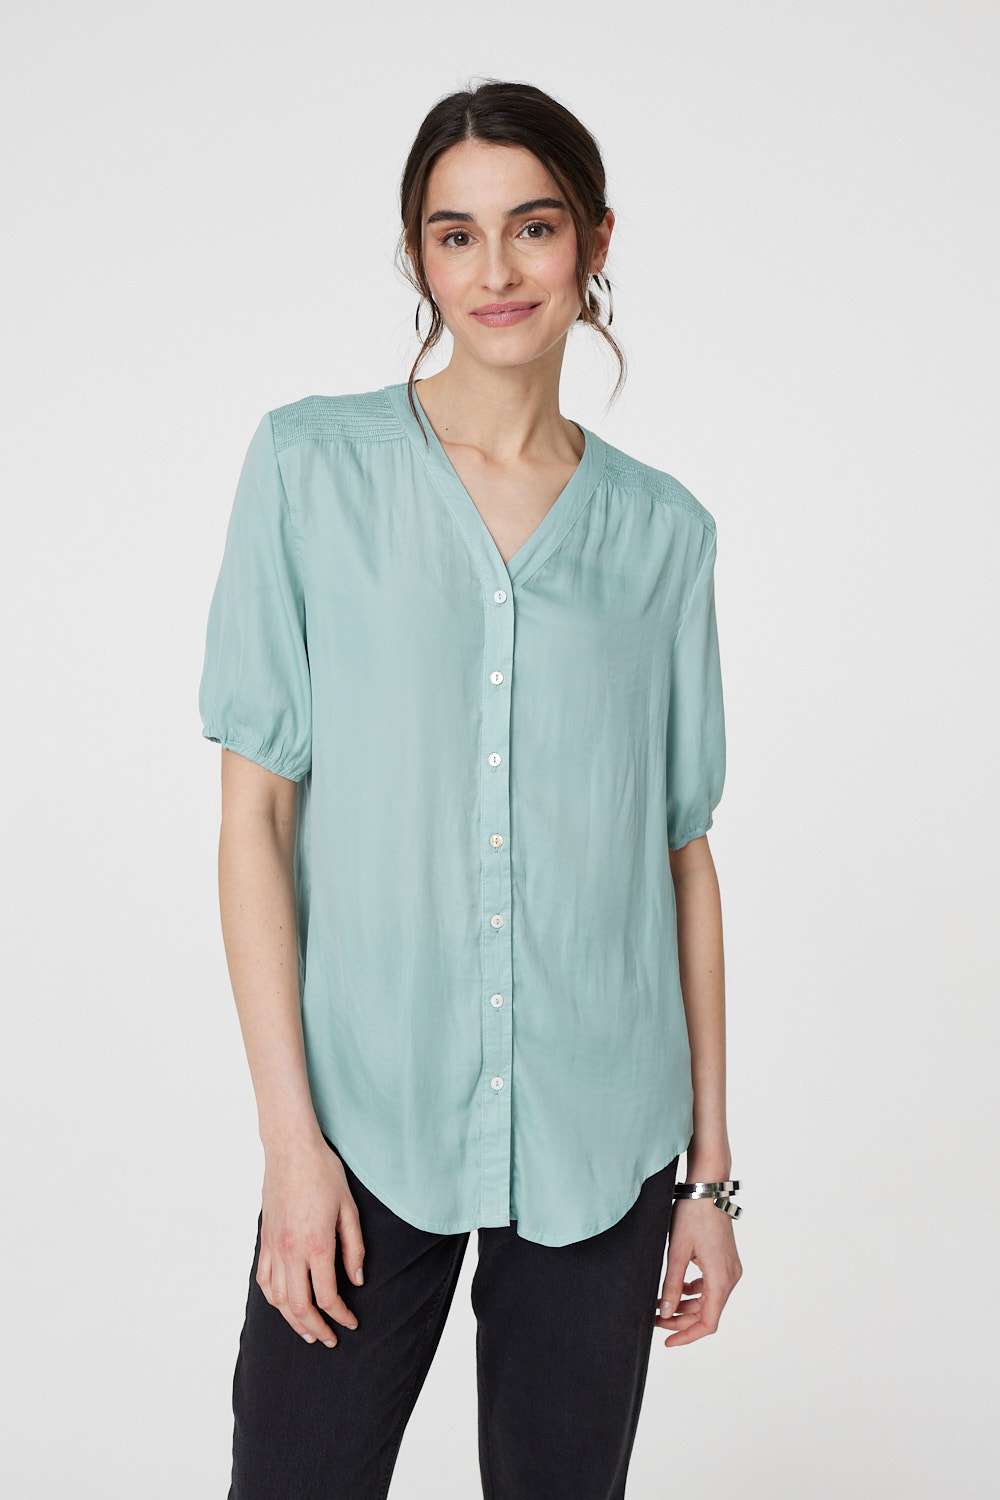 Sage | Plain V-Neck Puff 1/2 Sleeve Shirt